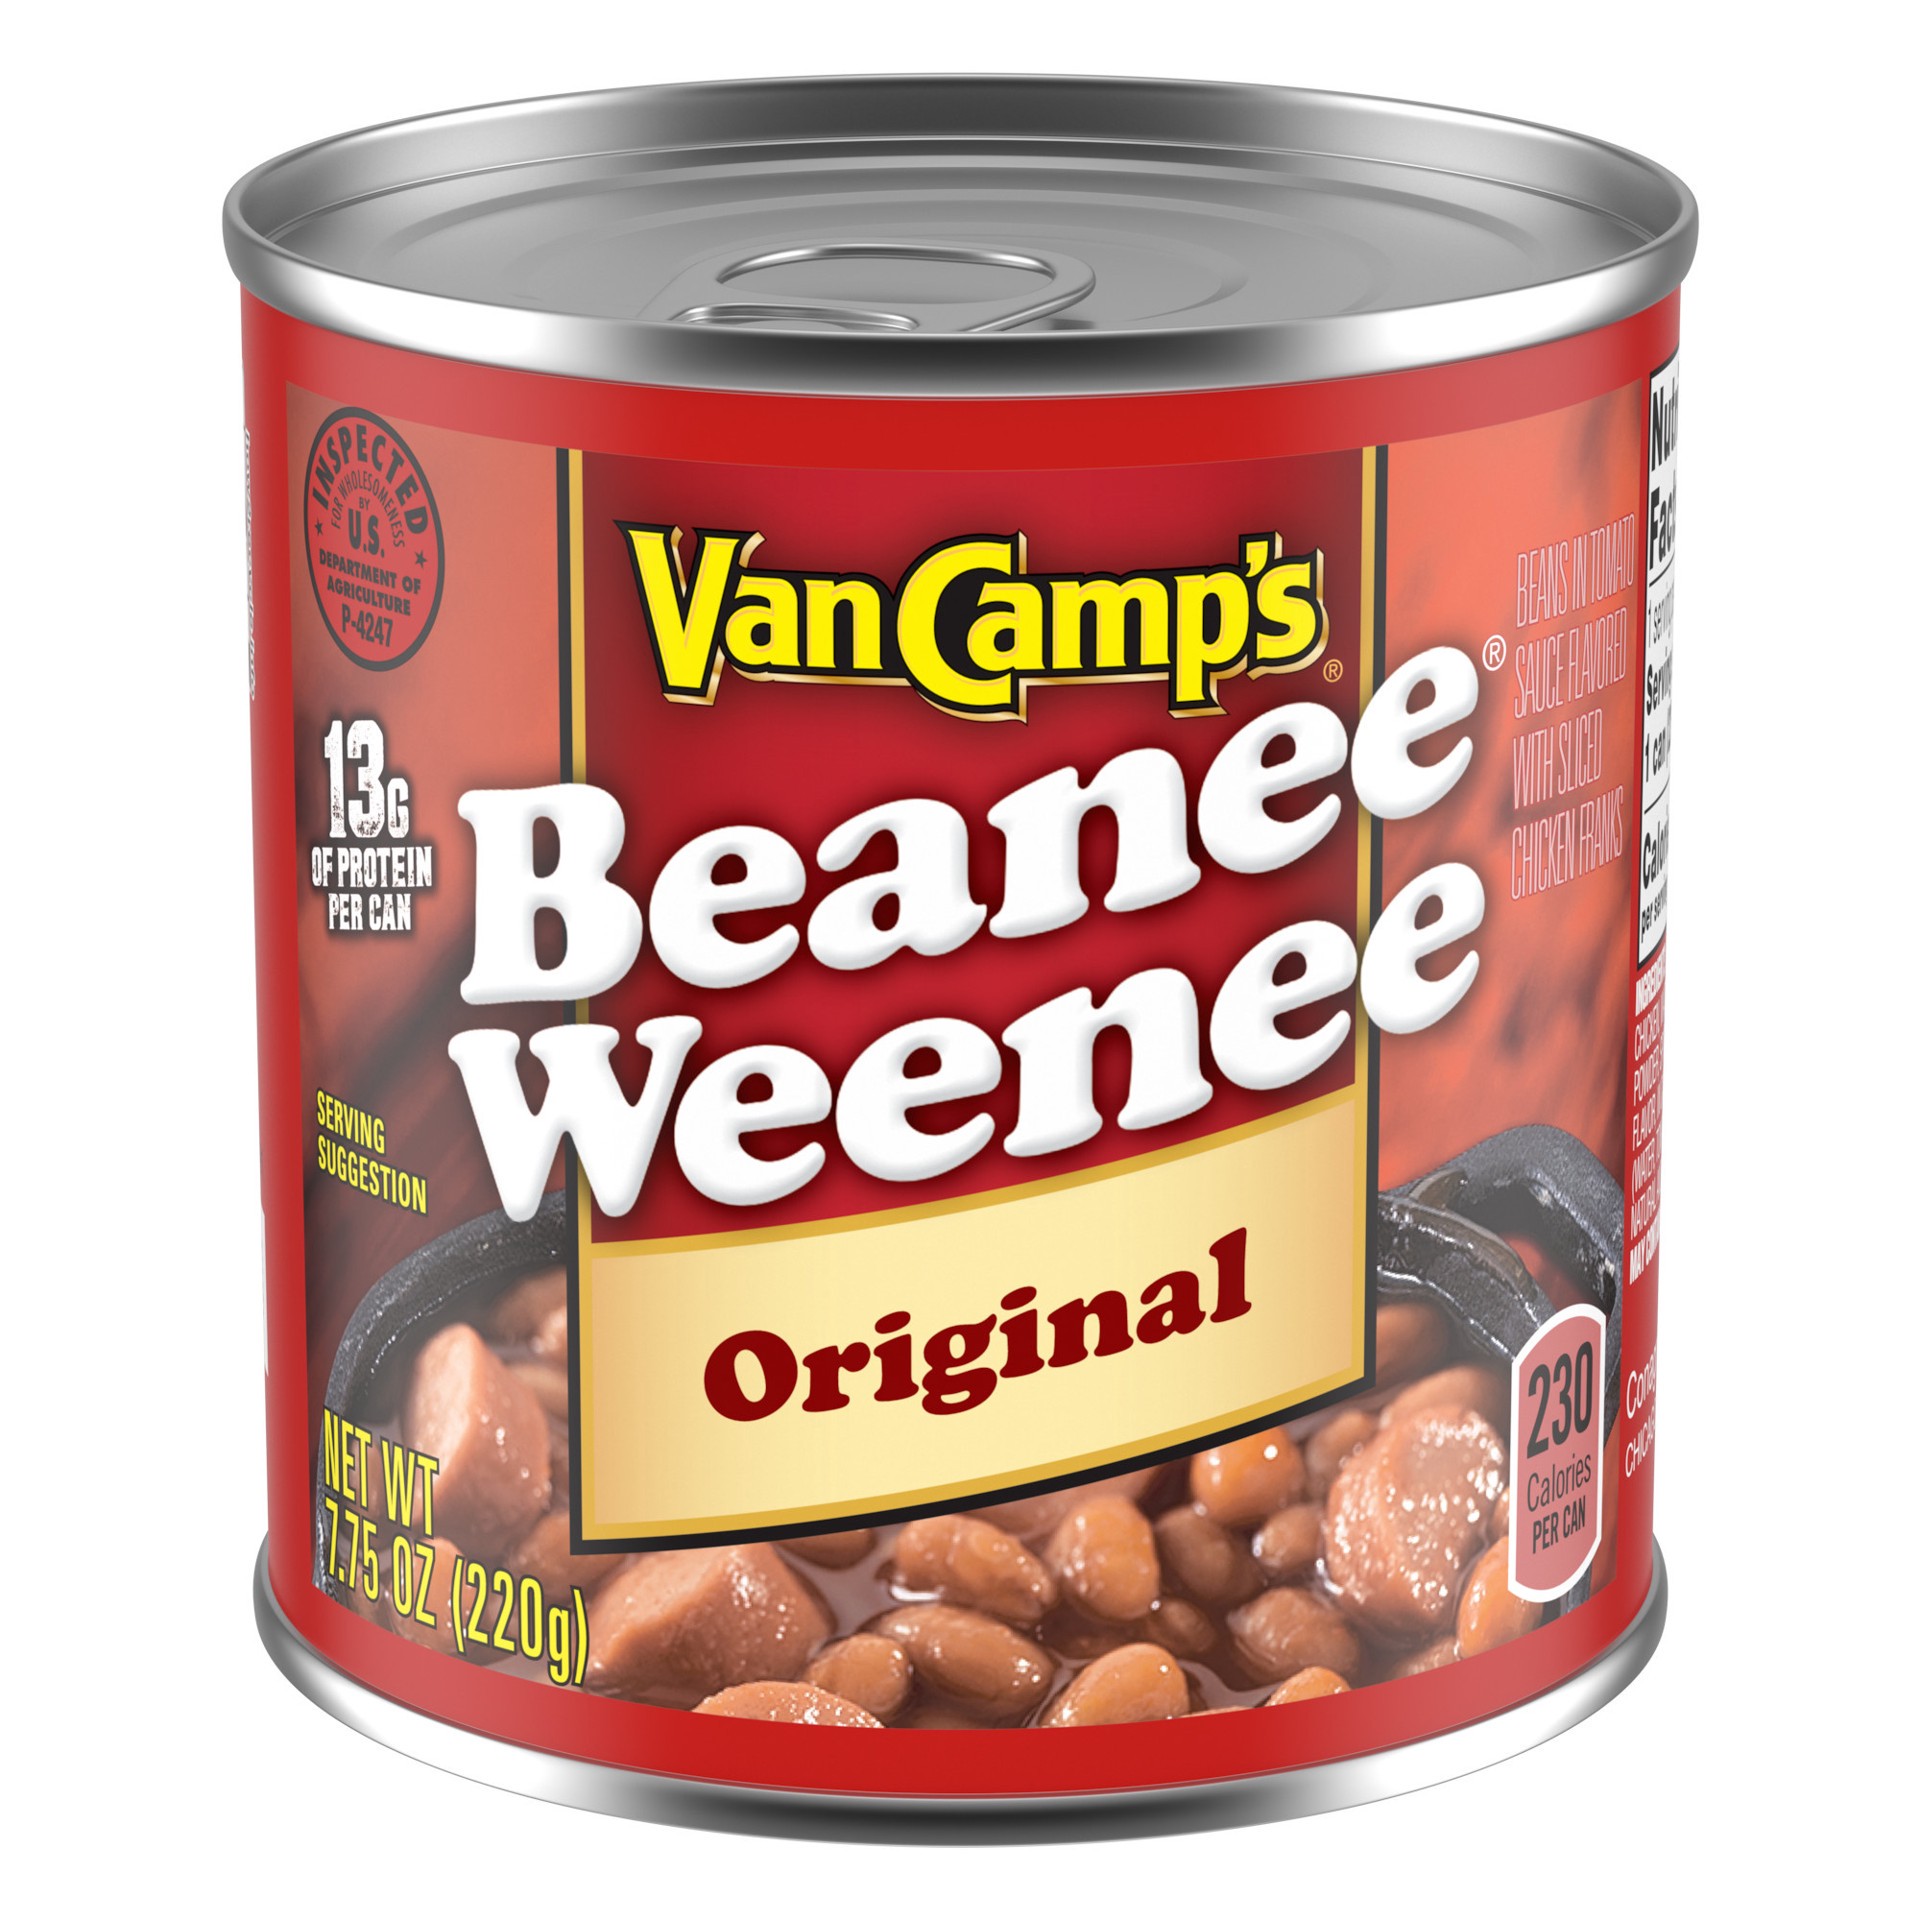 slide 1 of 5, Van Camp's Original Beanee Weenee, Canned Food, 7.75 OZ, 7.75 oz